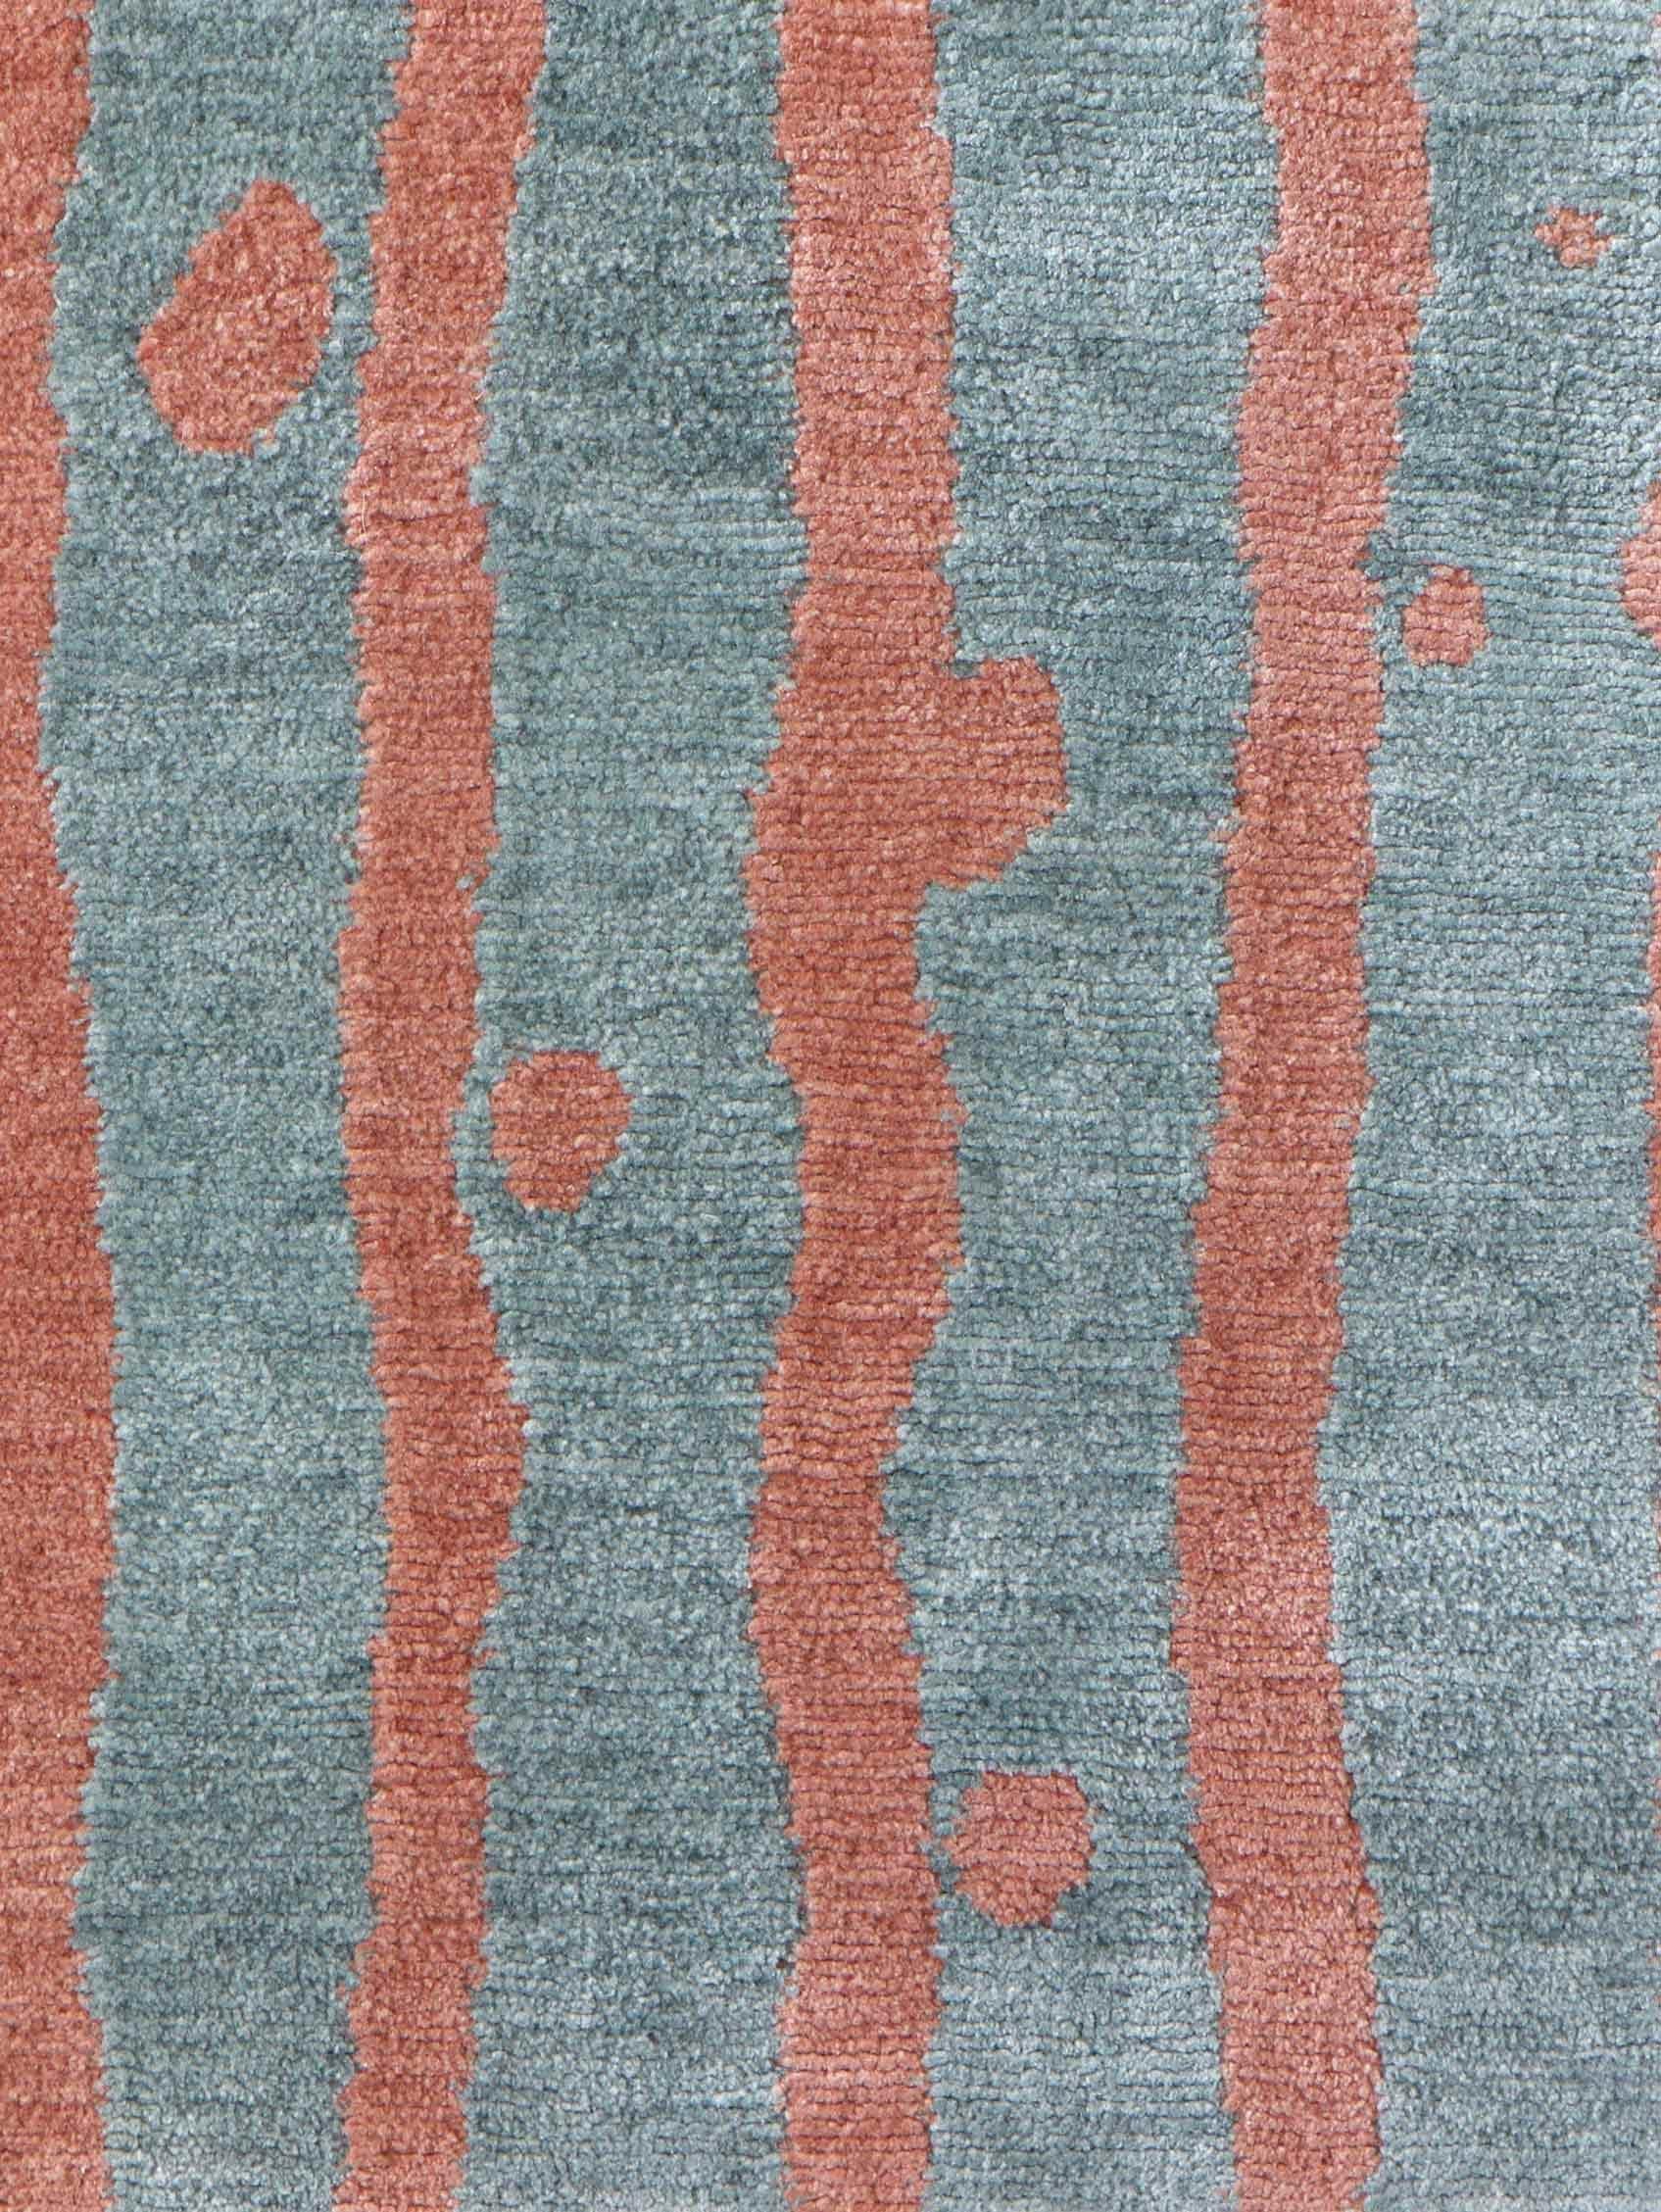 Muster des Teppichs: Drippy Stripe - Morea
MATERIAL: 100% Merinowolle
Qualität: Tibetisches Kreuzgeflecht, handgewebt 
Größe: 8'-0